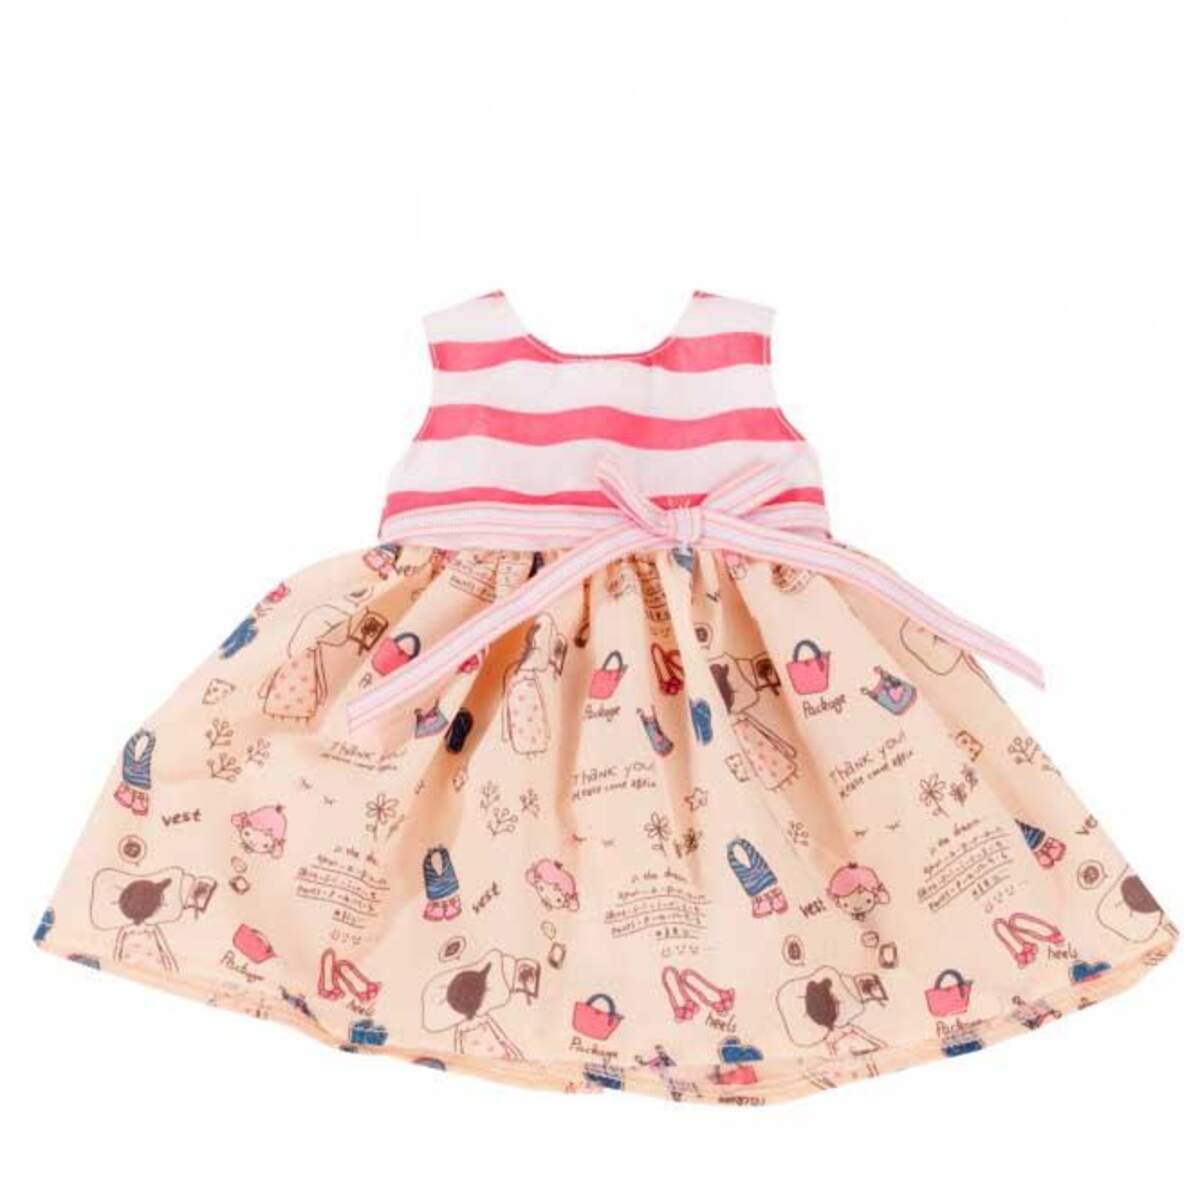 Götz Puppen Kleid Wonderland 50cm